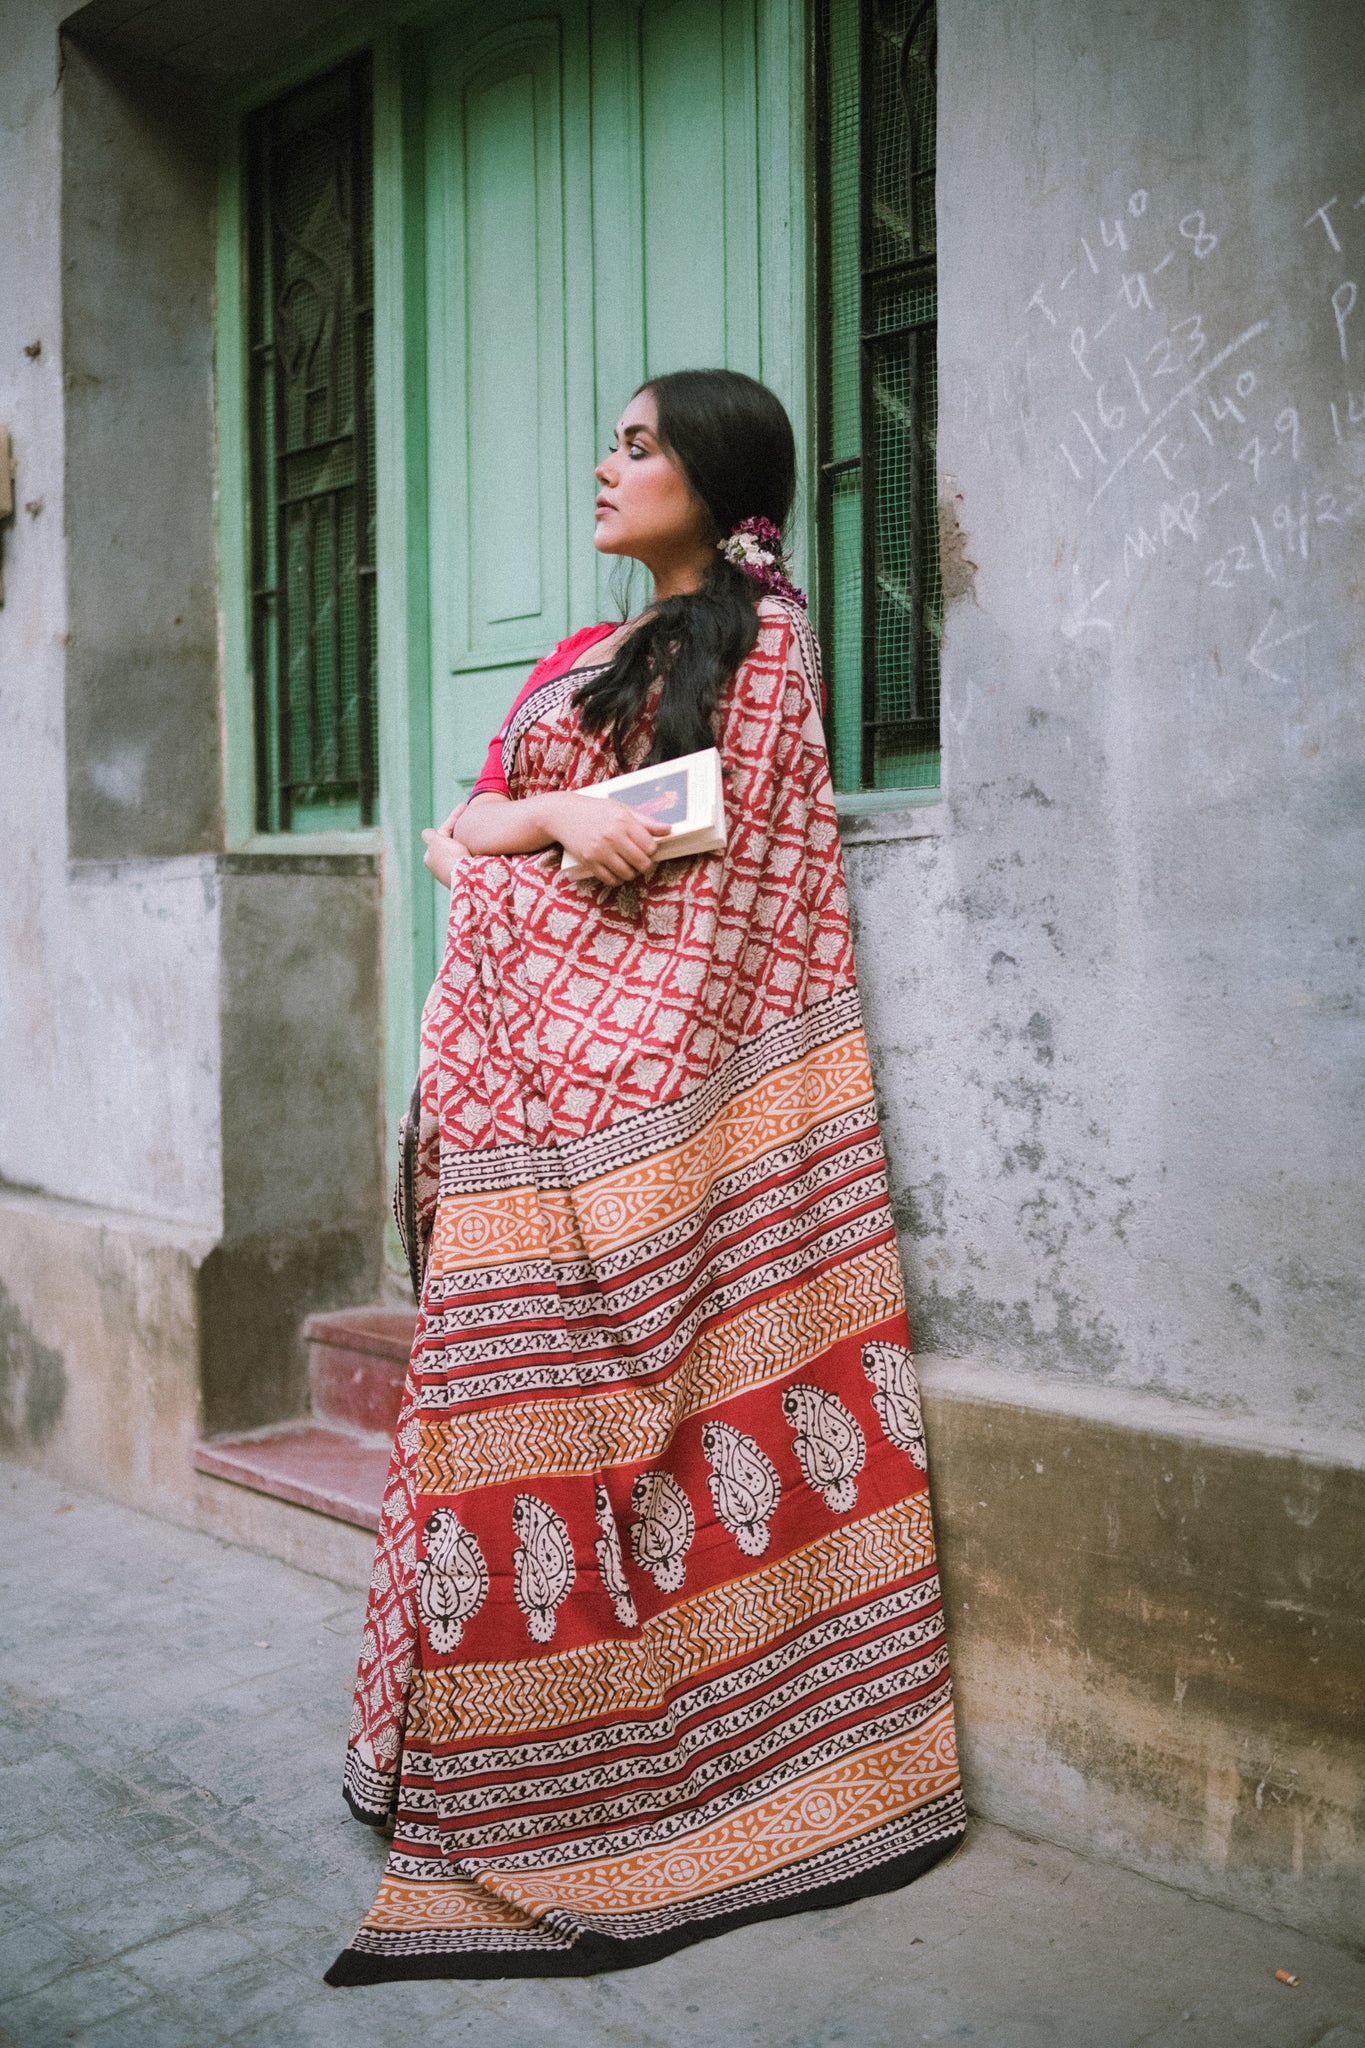 Brick Red Bagru Saree - Handblock Print Natural Dyed - Mulmul Cotton Saree